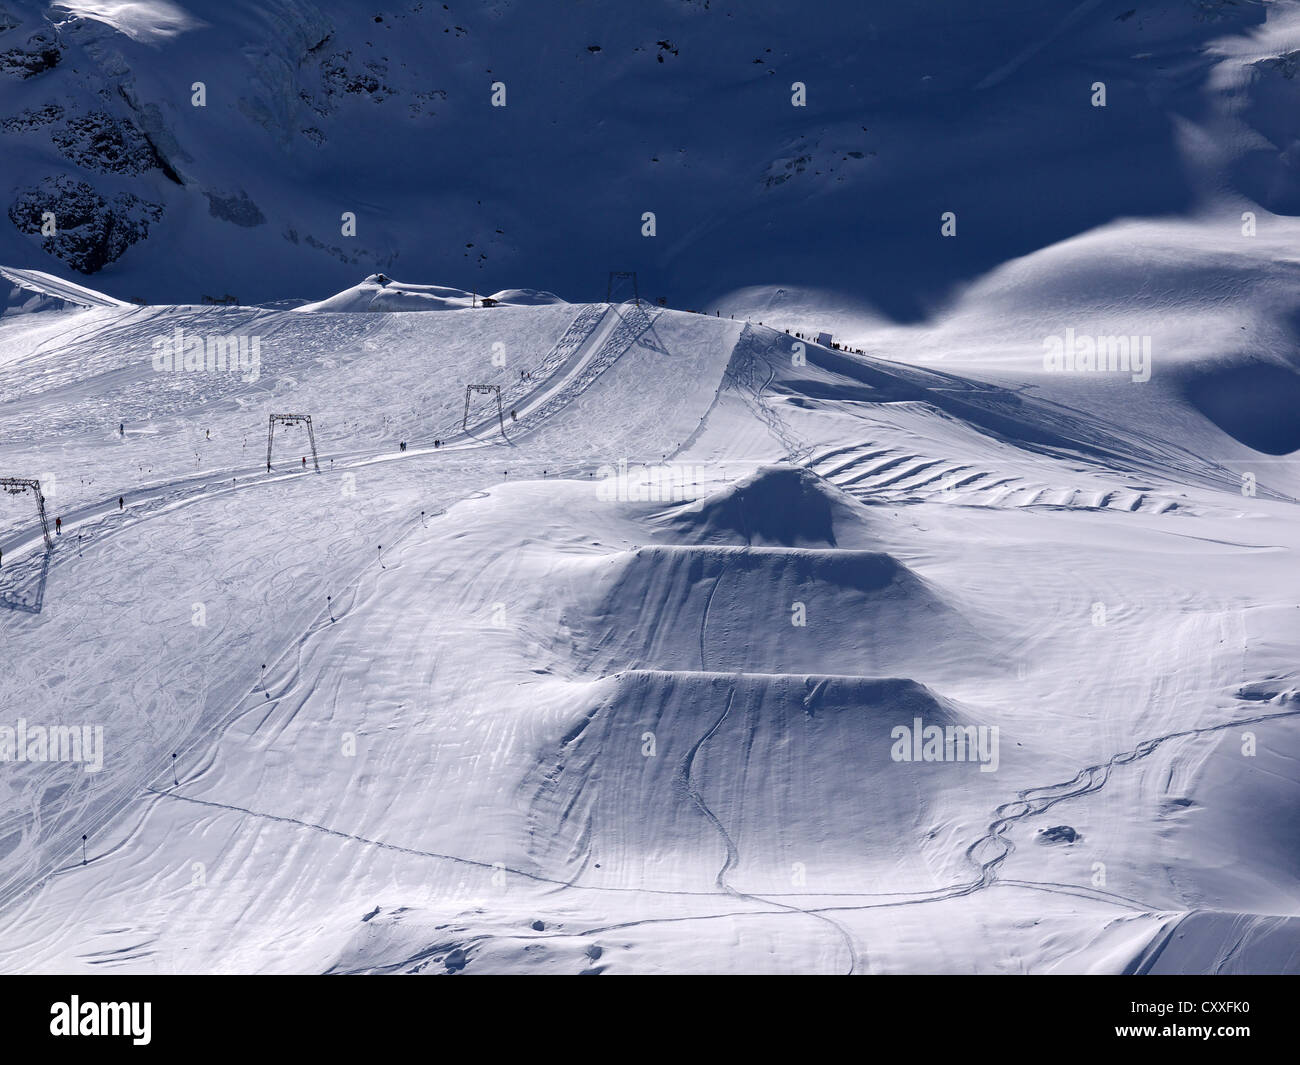 Saut à ski ski pour les snowboarders, le domaine skiable du glacier de Kaunertal, Kaunertal, Feichten, tyrolienne bernois, Tyrol, Autriche Banque D'Images